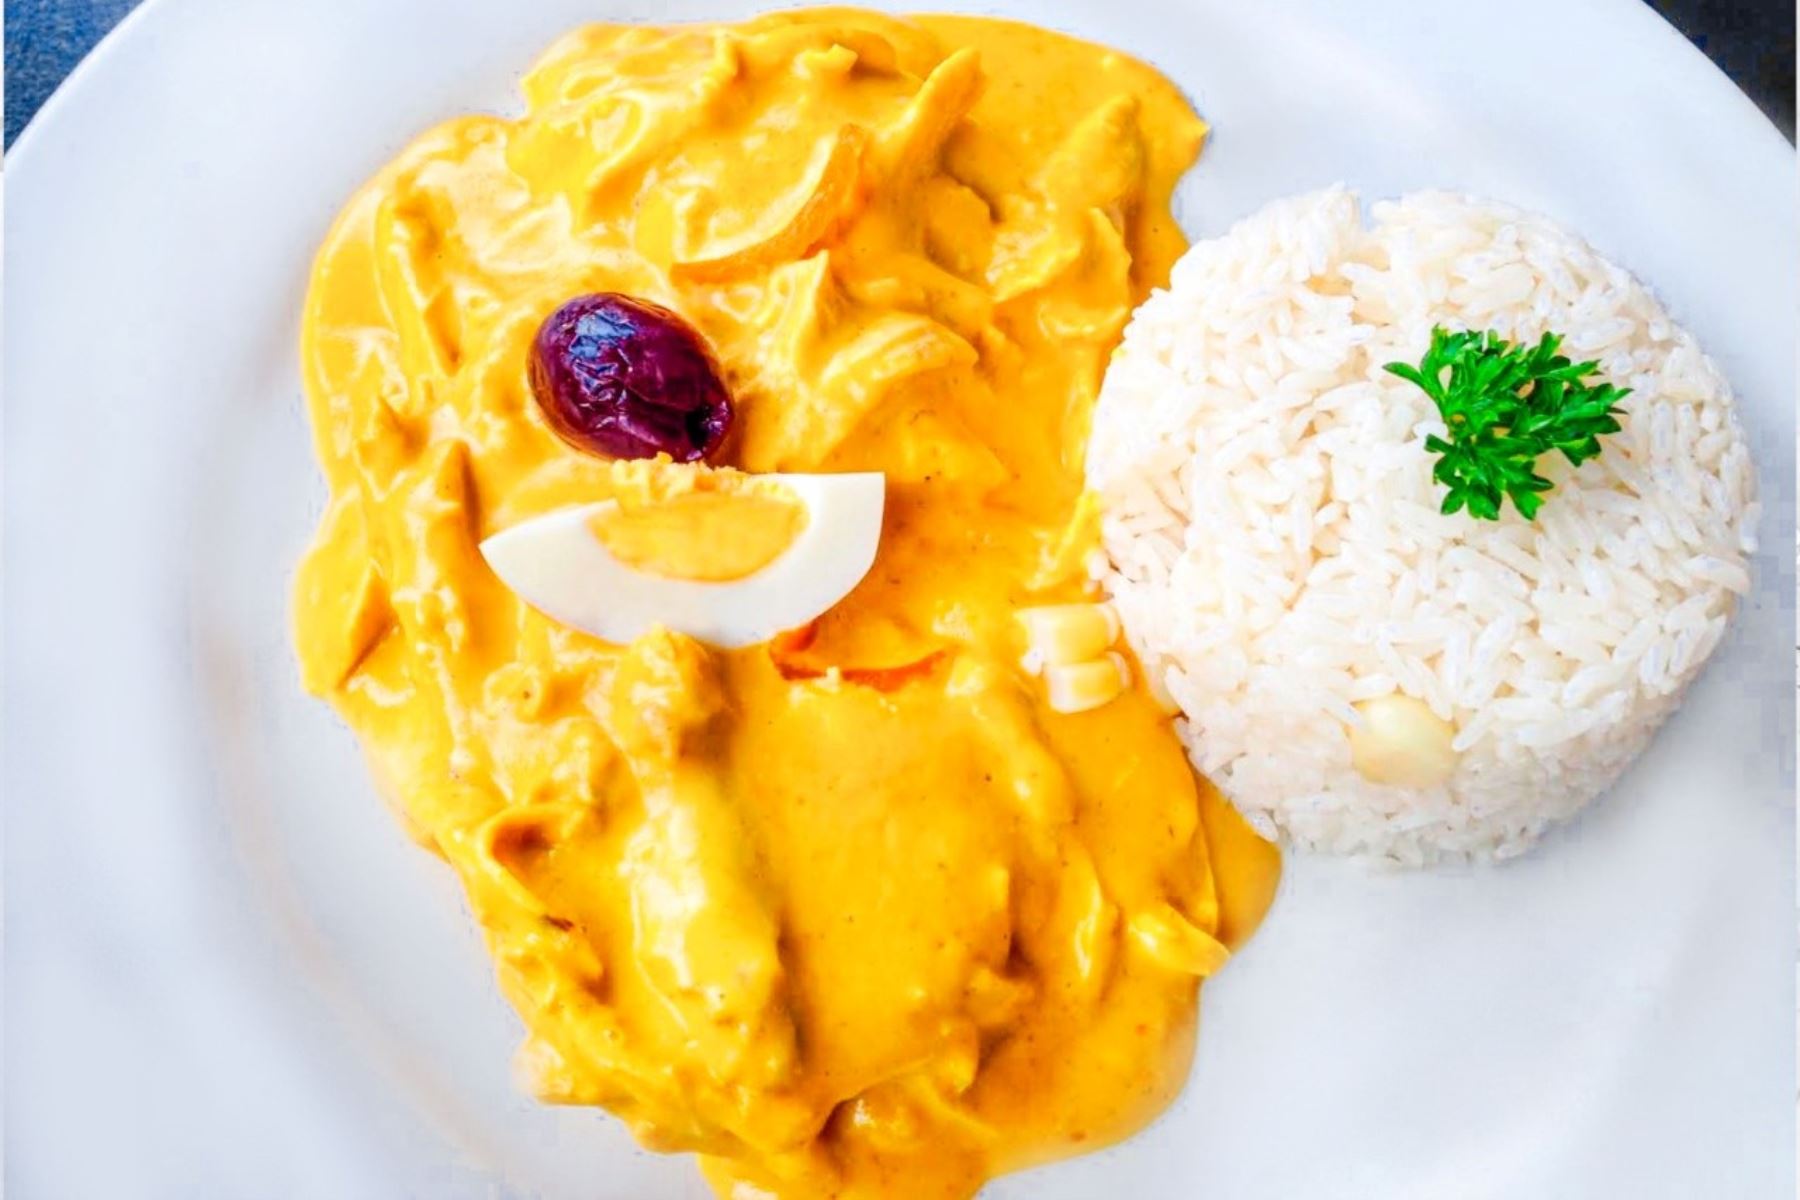 El Día Nacional de la Cocina y Gastronomía Peruana fue establecido por el Congreso de la República el 6 de octubre de 2010 con el aval del Mincetur y Apega.